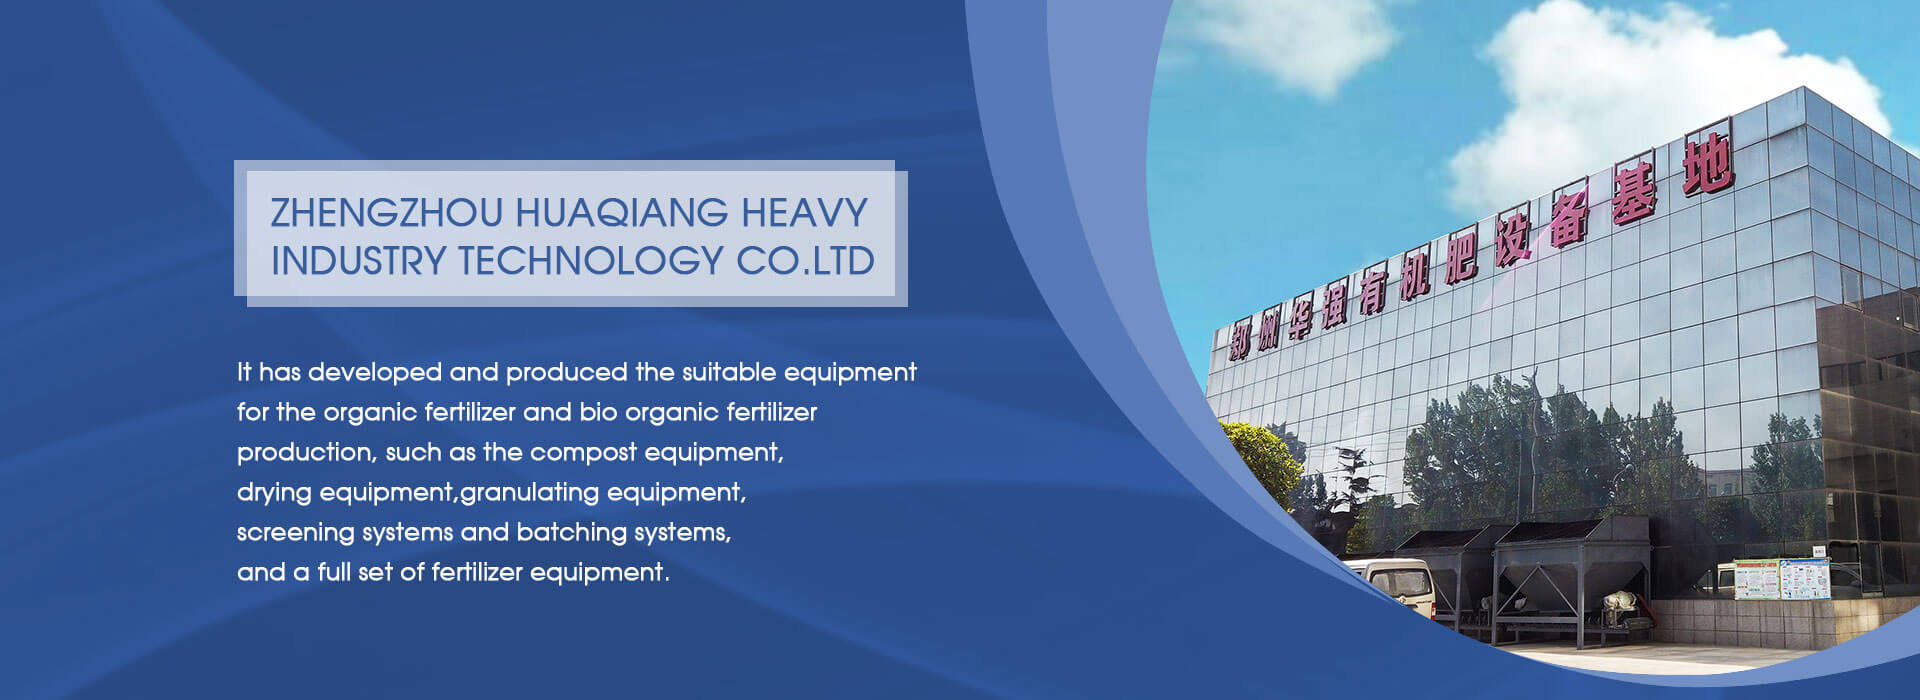 Zhengzhou Huaqiang Heavy Industry Technology Co.Ltd.